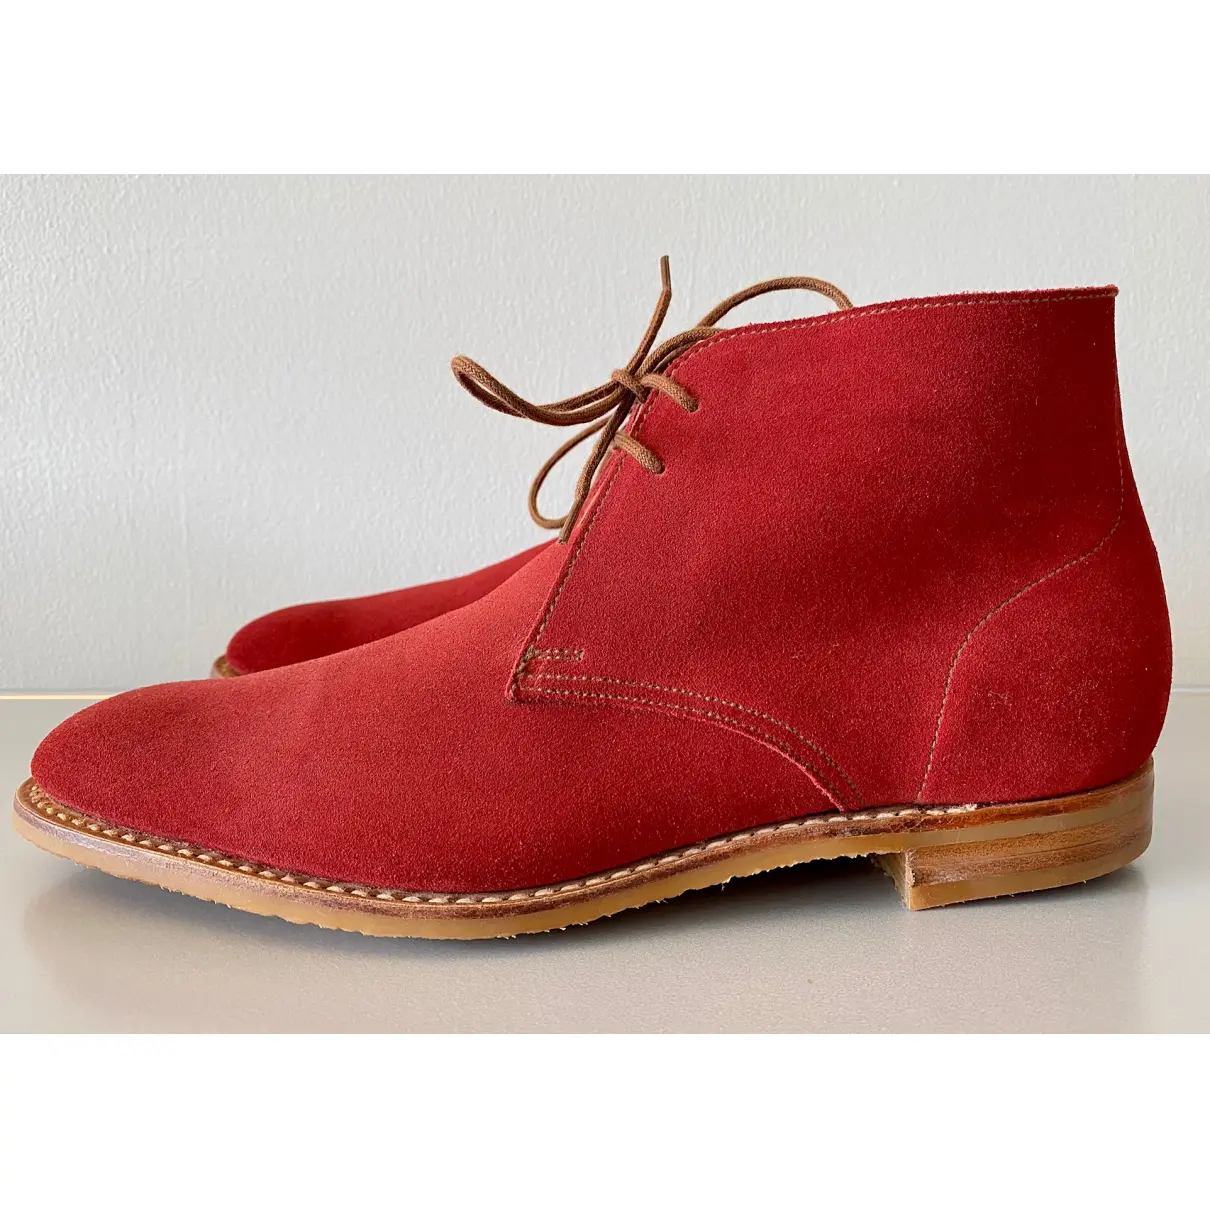 Buy Crockett& Jones Red Suede Boots online